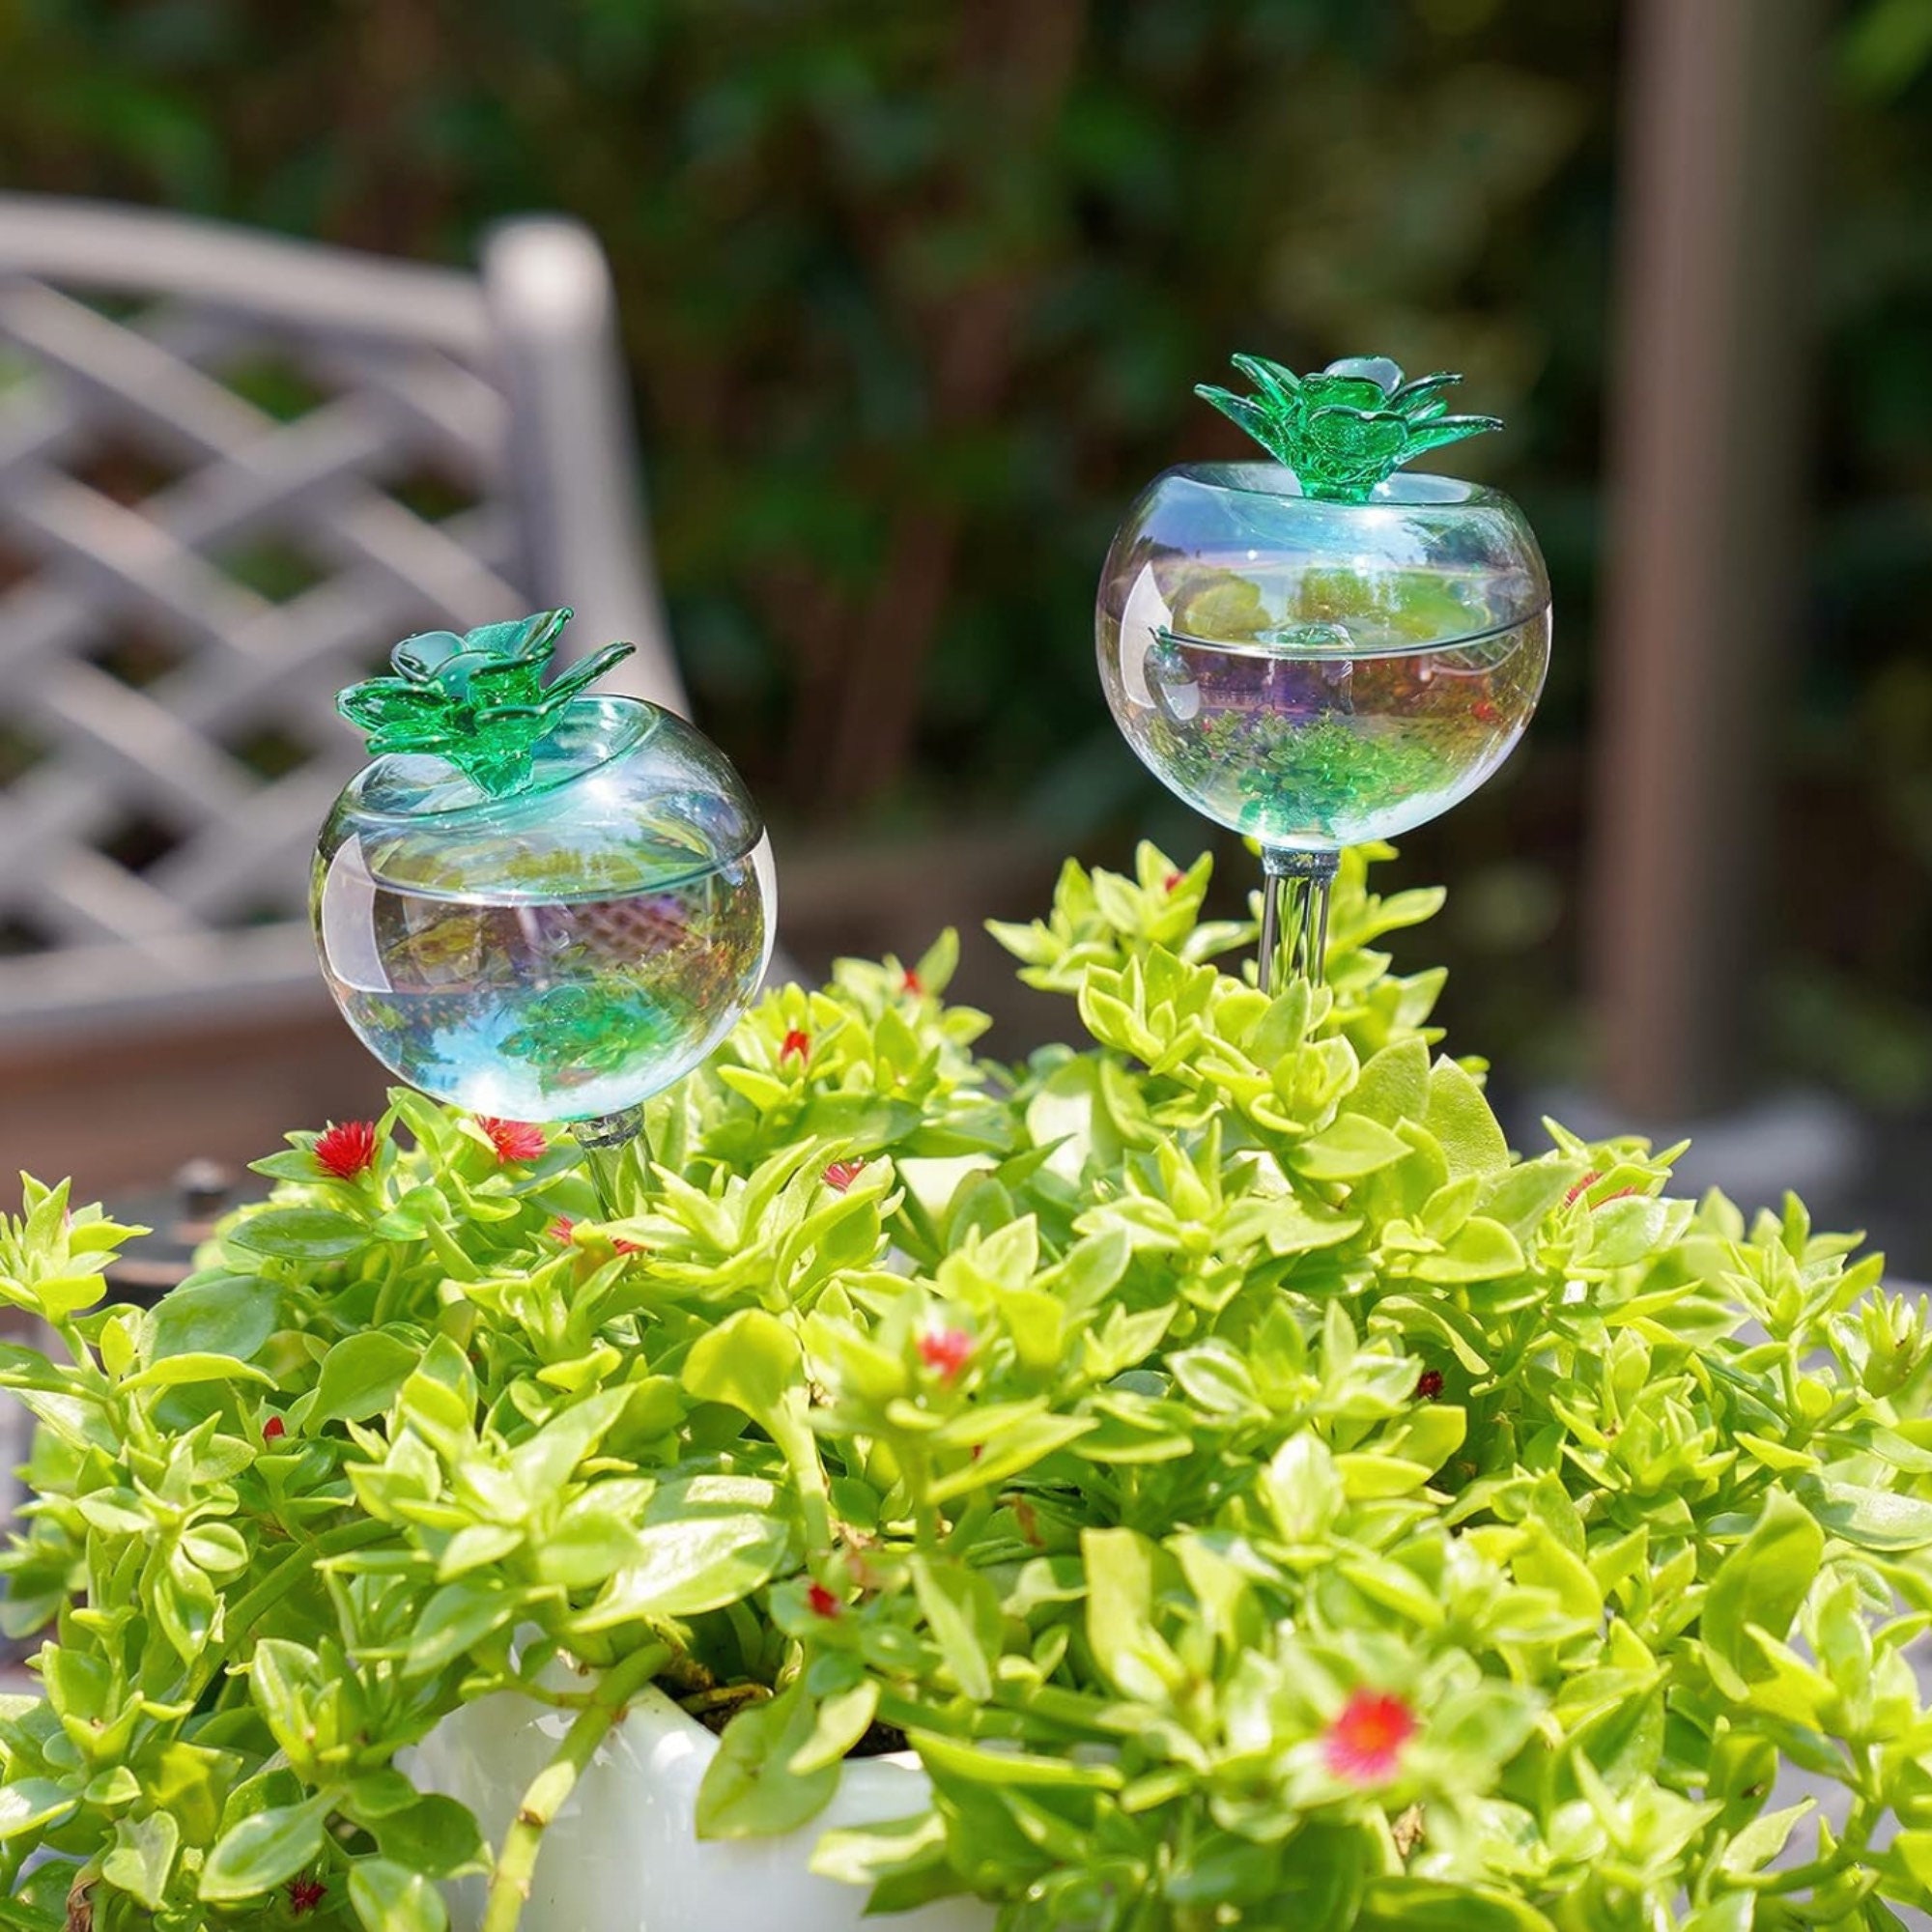 2 Globes d’arrosage pour plantes en verre - réservoir d’eau arroseur pour  plantes, goutte à goutte, intérieur extérieur pas cher